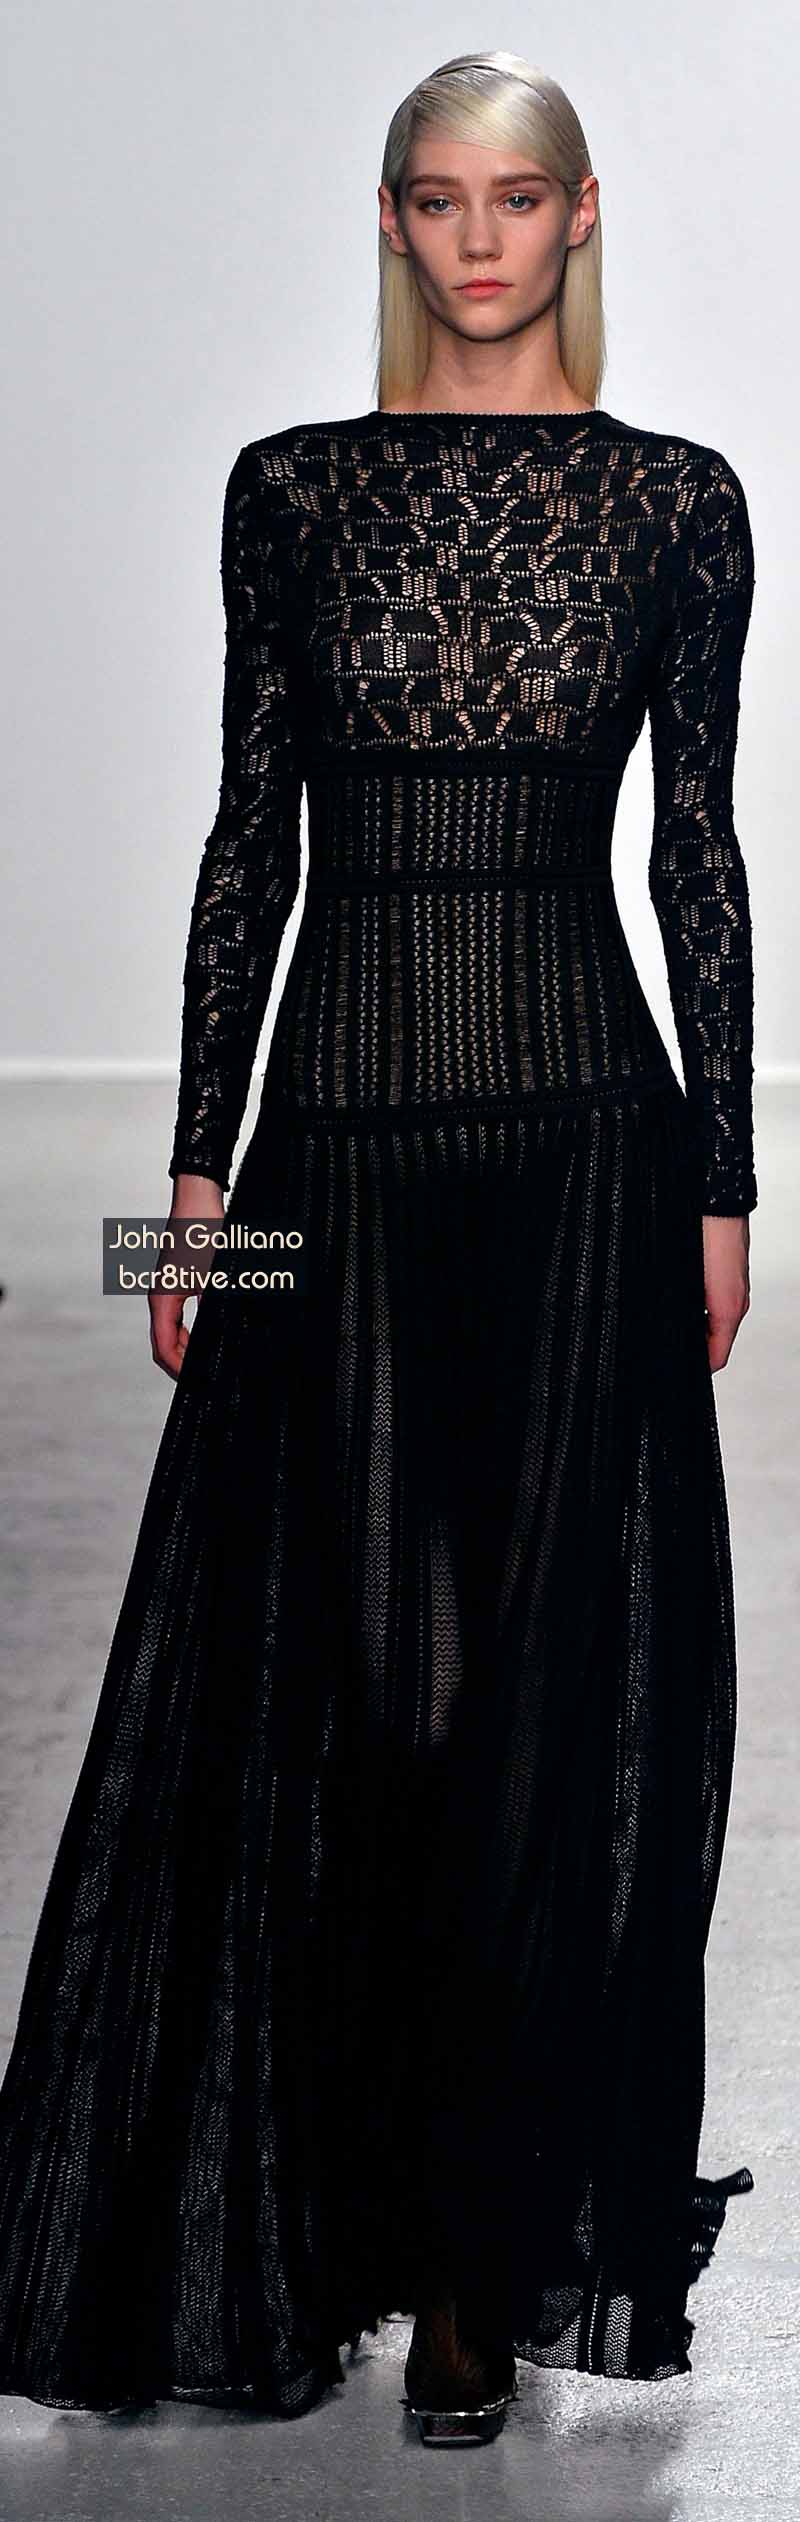 John Galliano Fall 2014